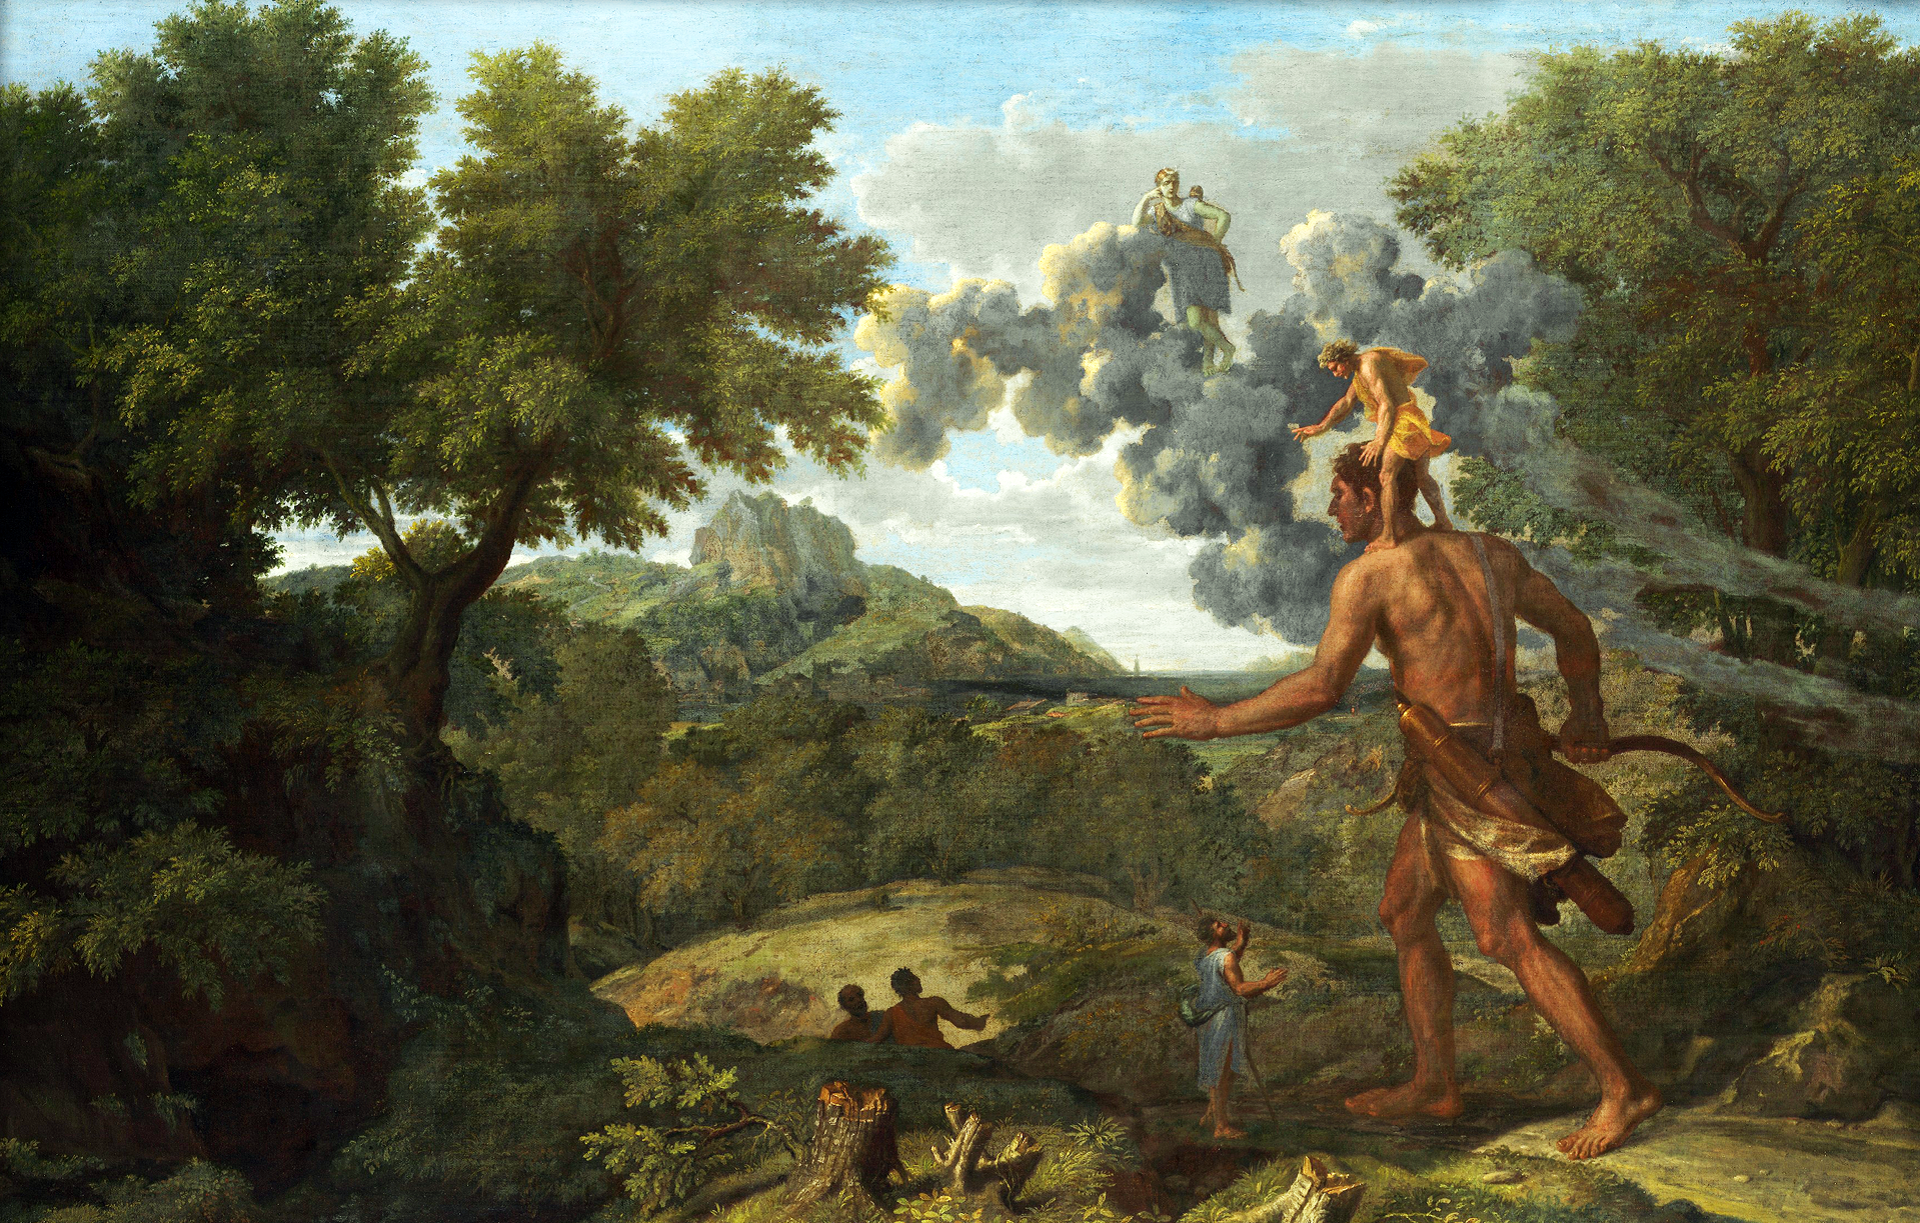 Ilustracja przedstawia obraz „Pejzaż z Orionem” autorstwa Nicolasa Poussina. Obraz ukazuje krajobraz doliny z licznymi drzewami i krzewami. Doliną idzie postać olbrzyma. Jest to skąpo ubrany mężczyzna, niosący w prawej dłoni łuk. Postać u boku ma zawieszony kołczan. Na ramionach olbrzyma stoi mężczyzna, na którego postać nie zwraca uwagi. Dookoła znajdują się ludzie obserwujący olbrzyma. Na niebie widoczne są również skłębione chmury, na których stoi postać przyglądająca się całej sytuacji.